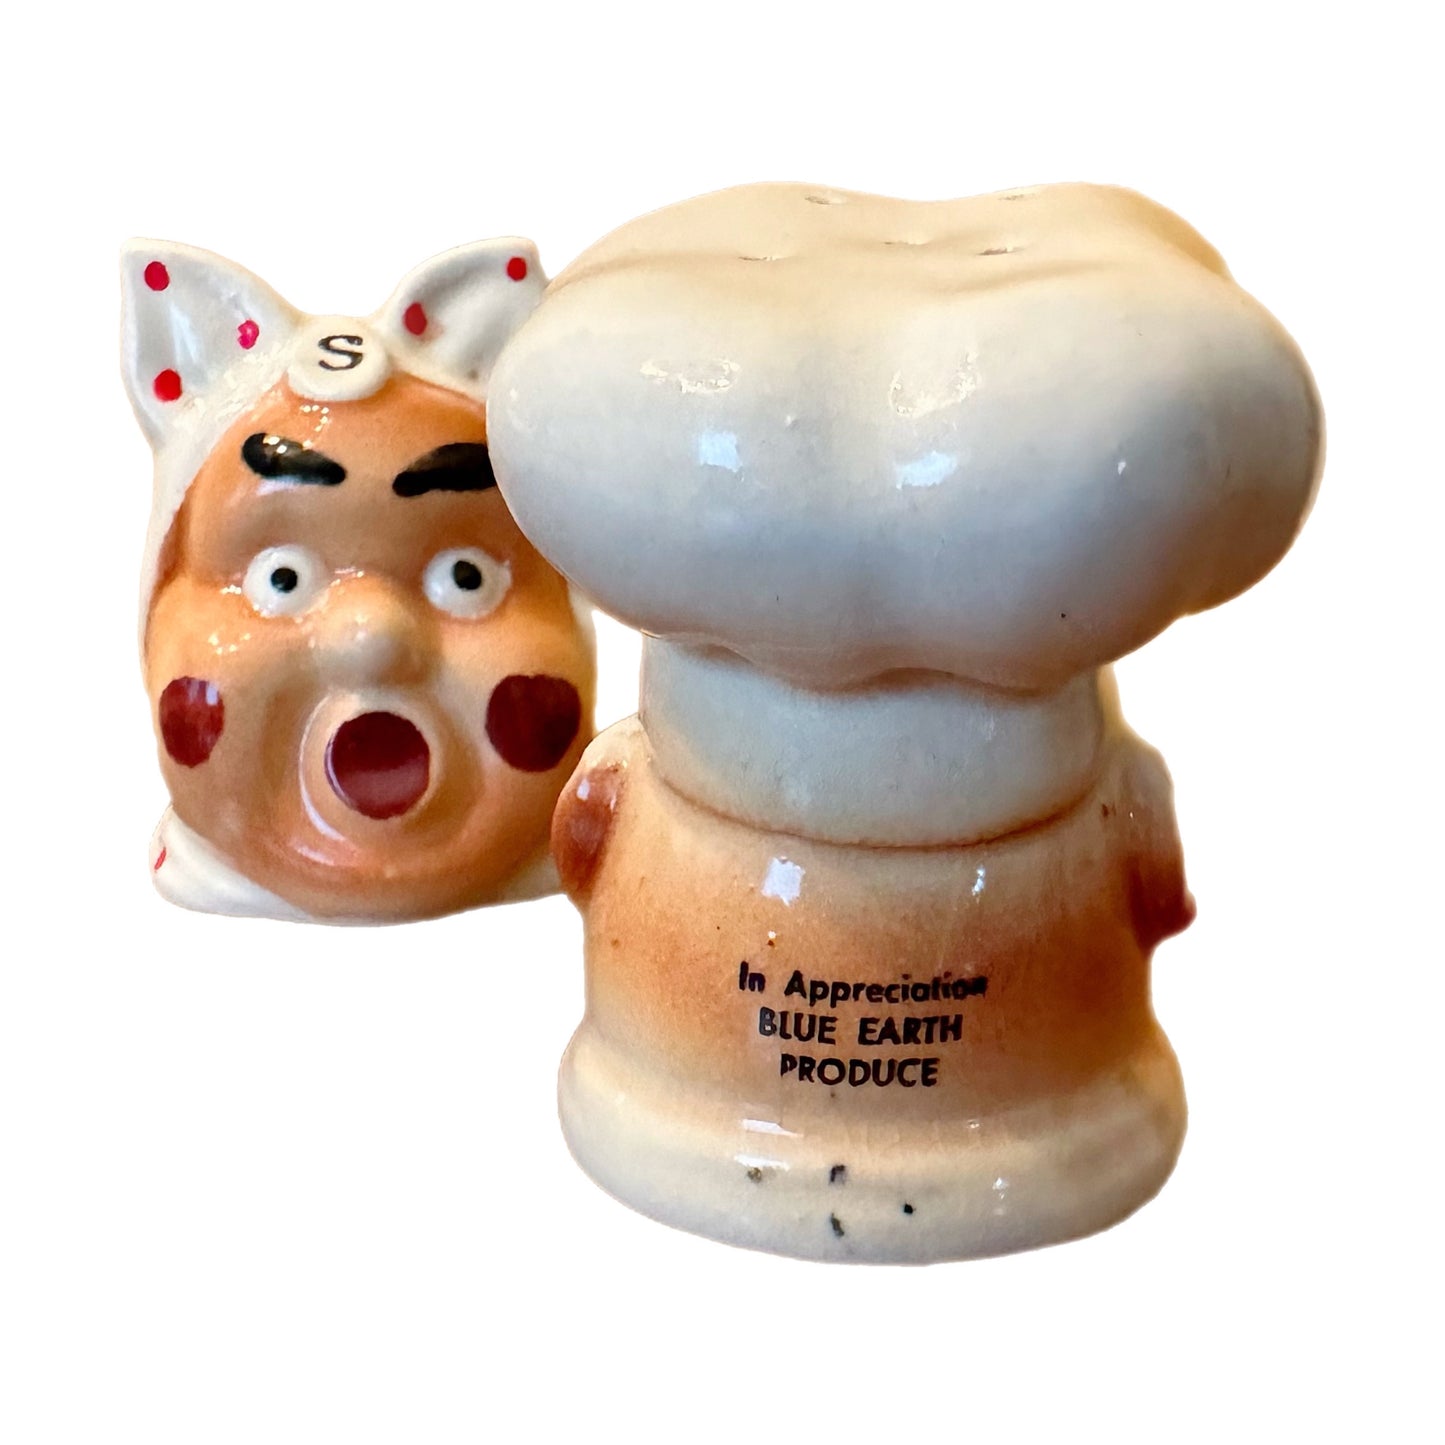 VINTAGE CHEF COOK BAKER SALT & PEPPER SHAKER SET, Large Heads, Vintage Japan Ceramics